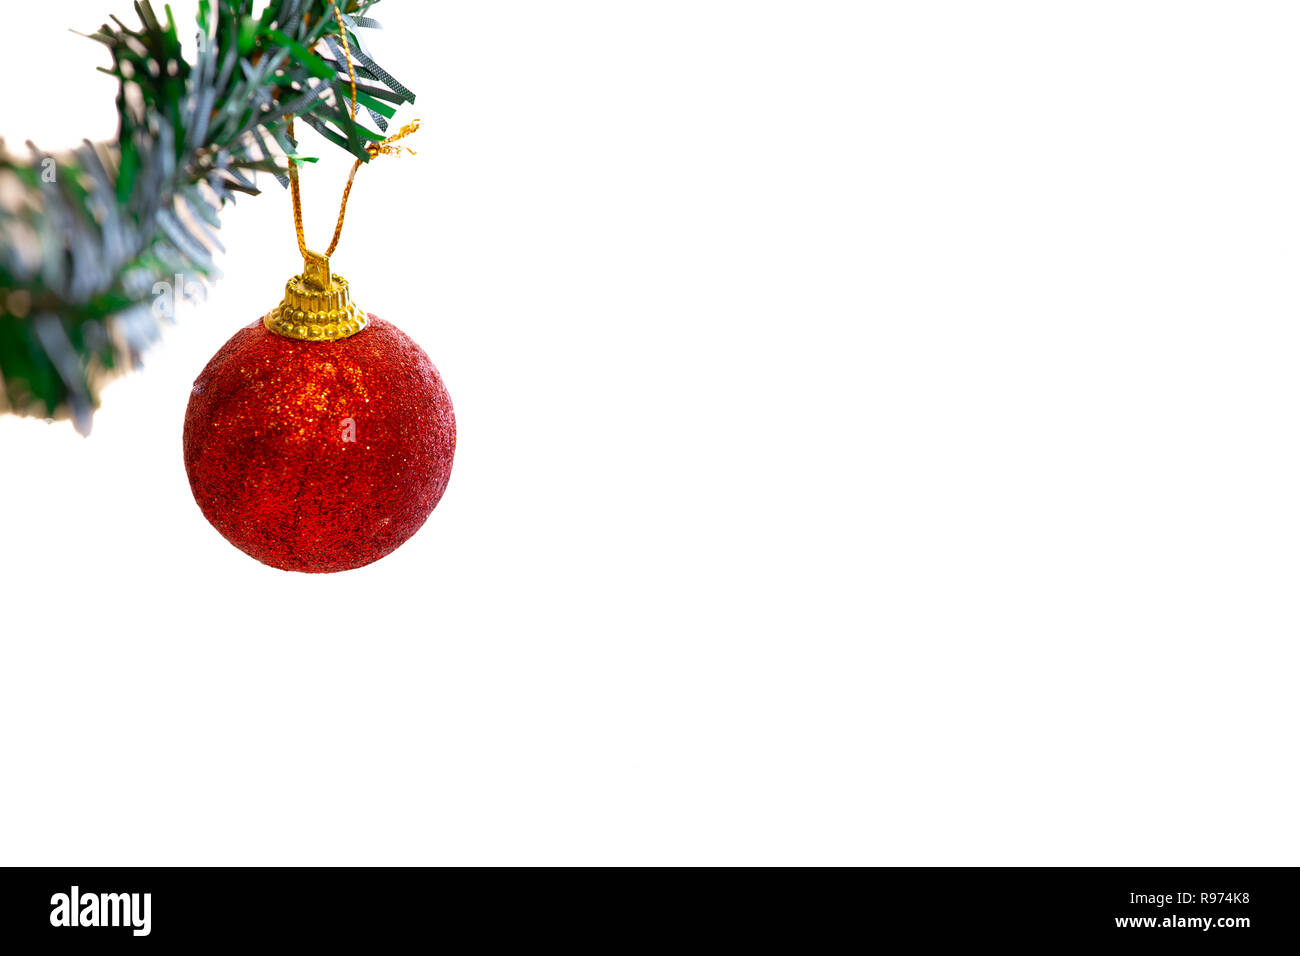 Schöne Weihnachten Dekorationen auf Pine Tree - Weihnachten Hintergrund. Frohes Neues Jahr und Weihnachten Thema - Bild Stockfoto